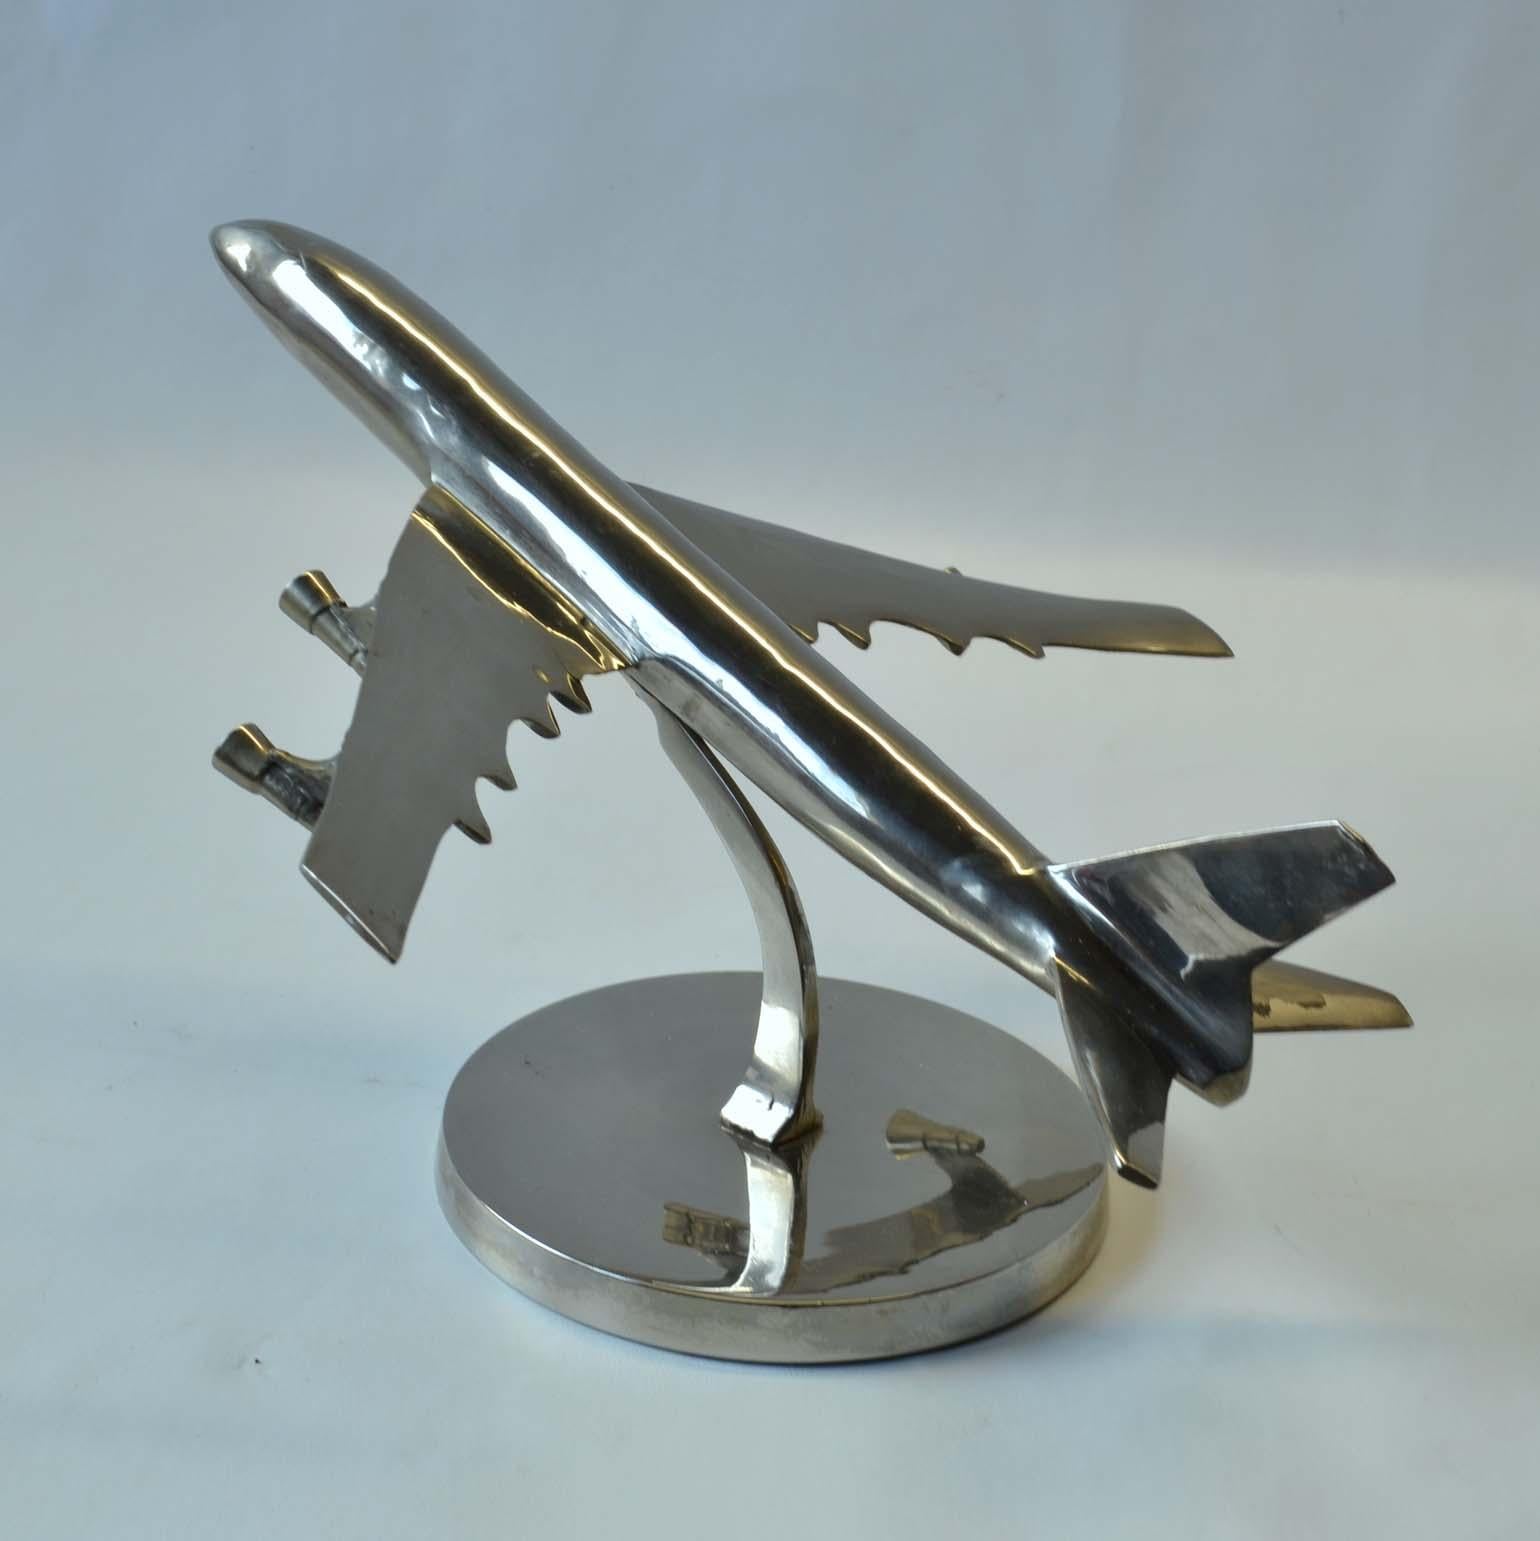 aluminium plane model